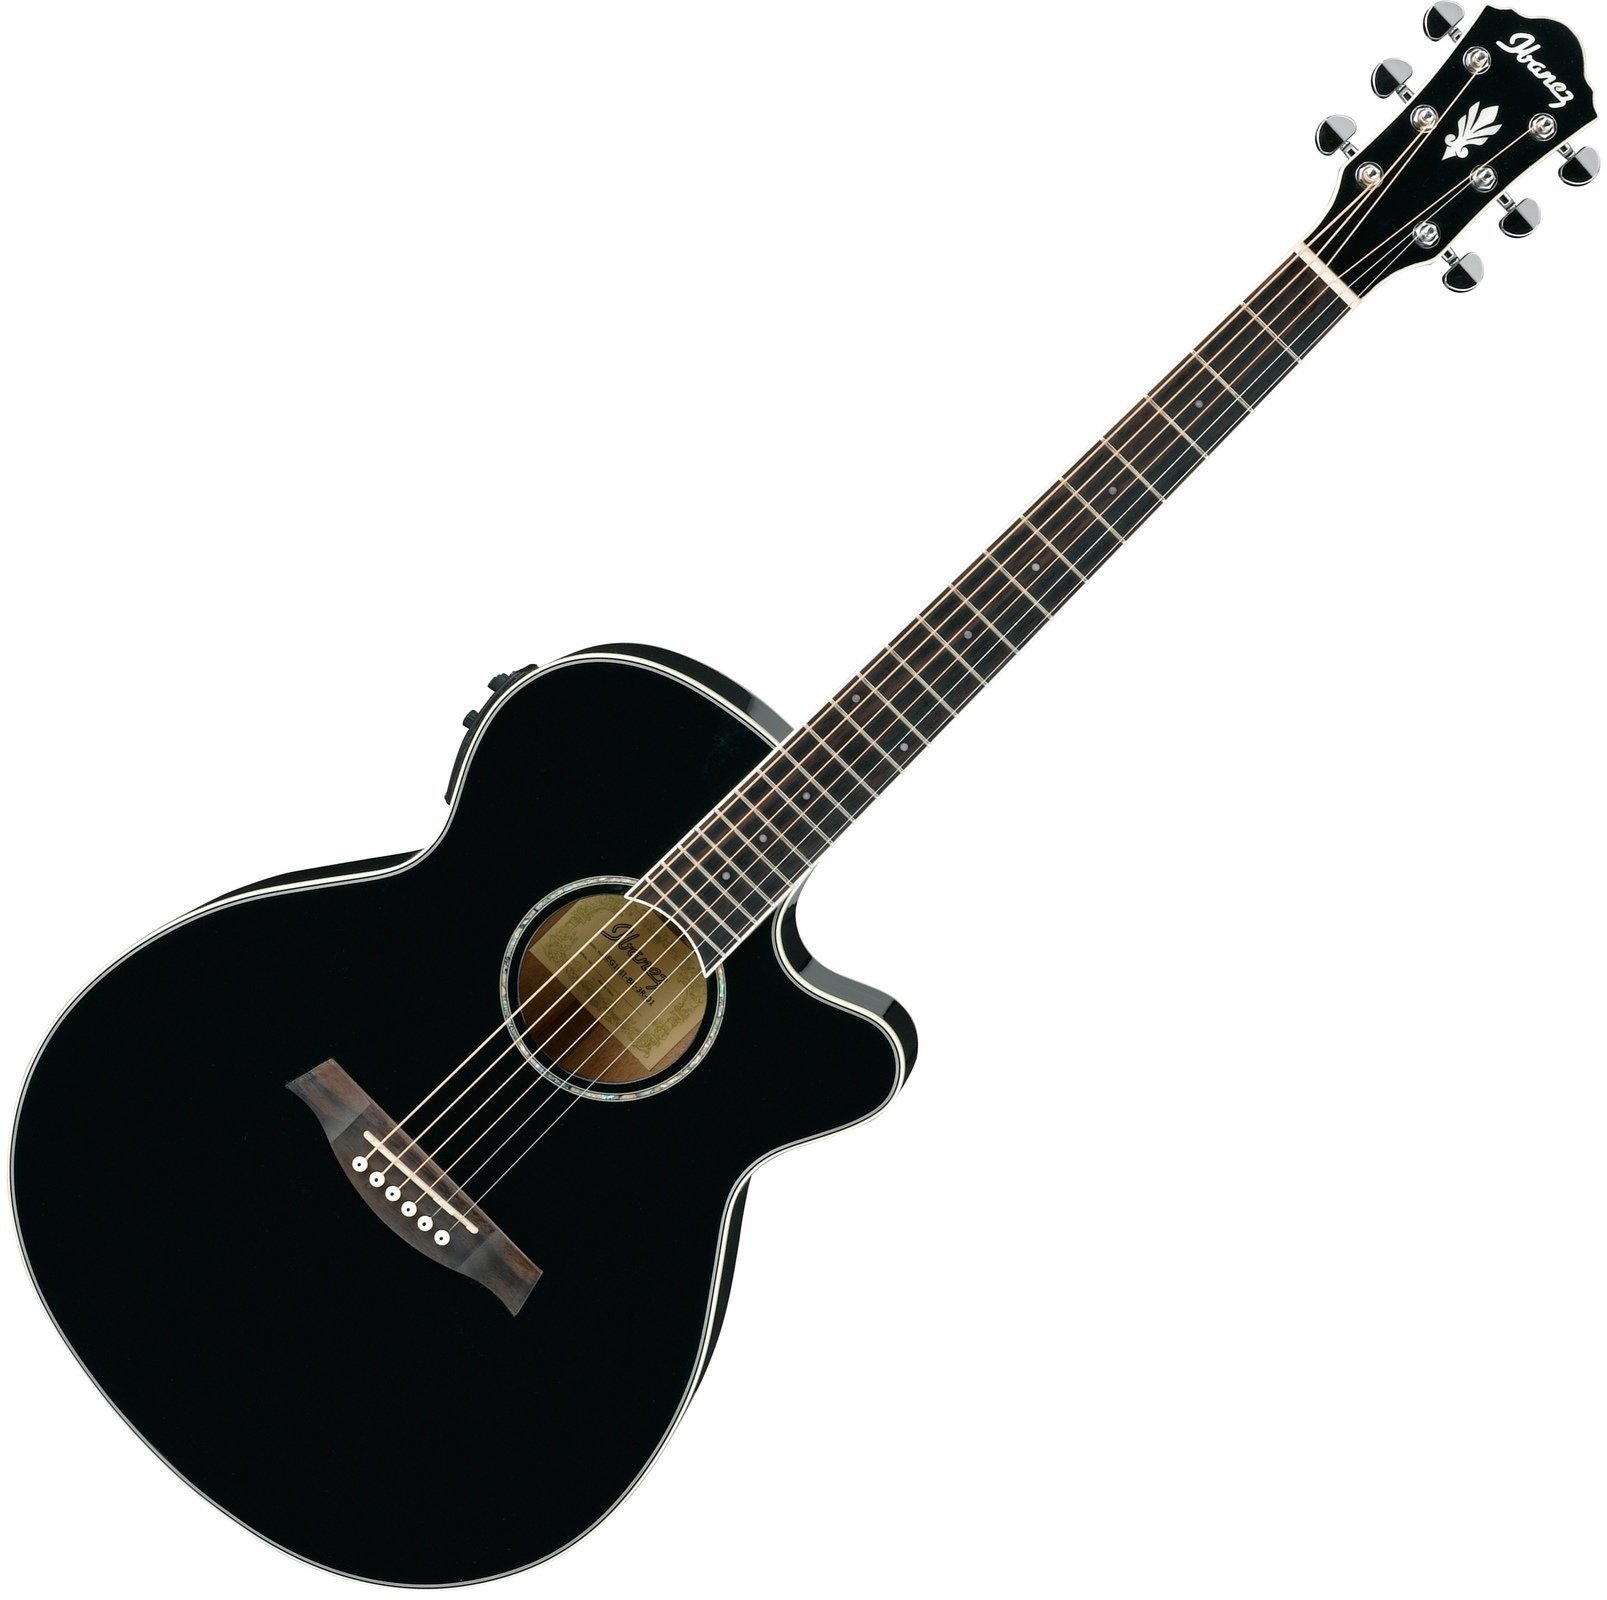 Jumbo elektro-akoestische gitaar Ibanez AEG 30II Black